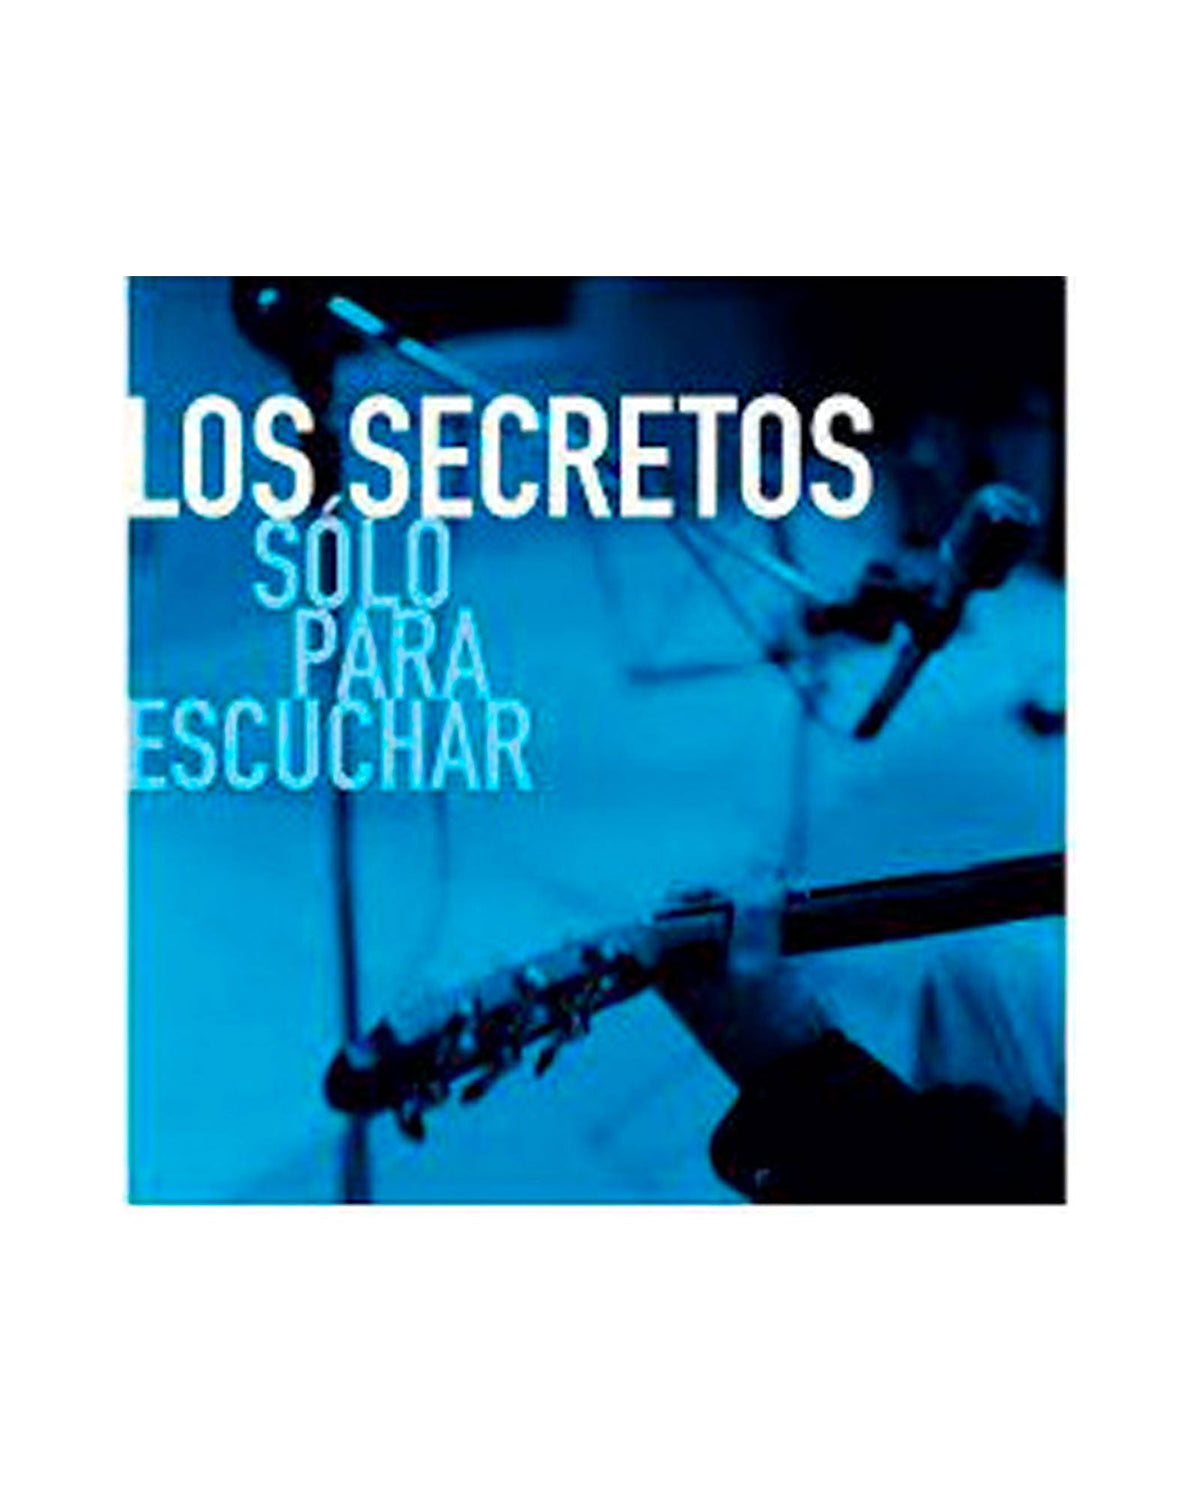 Los Secretos - CD + VINILO LP "Solo Para Escuchar" - Rocktud - Los Secretos